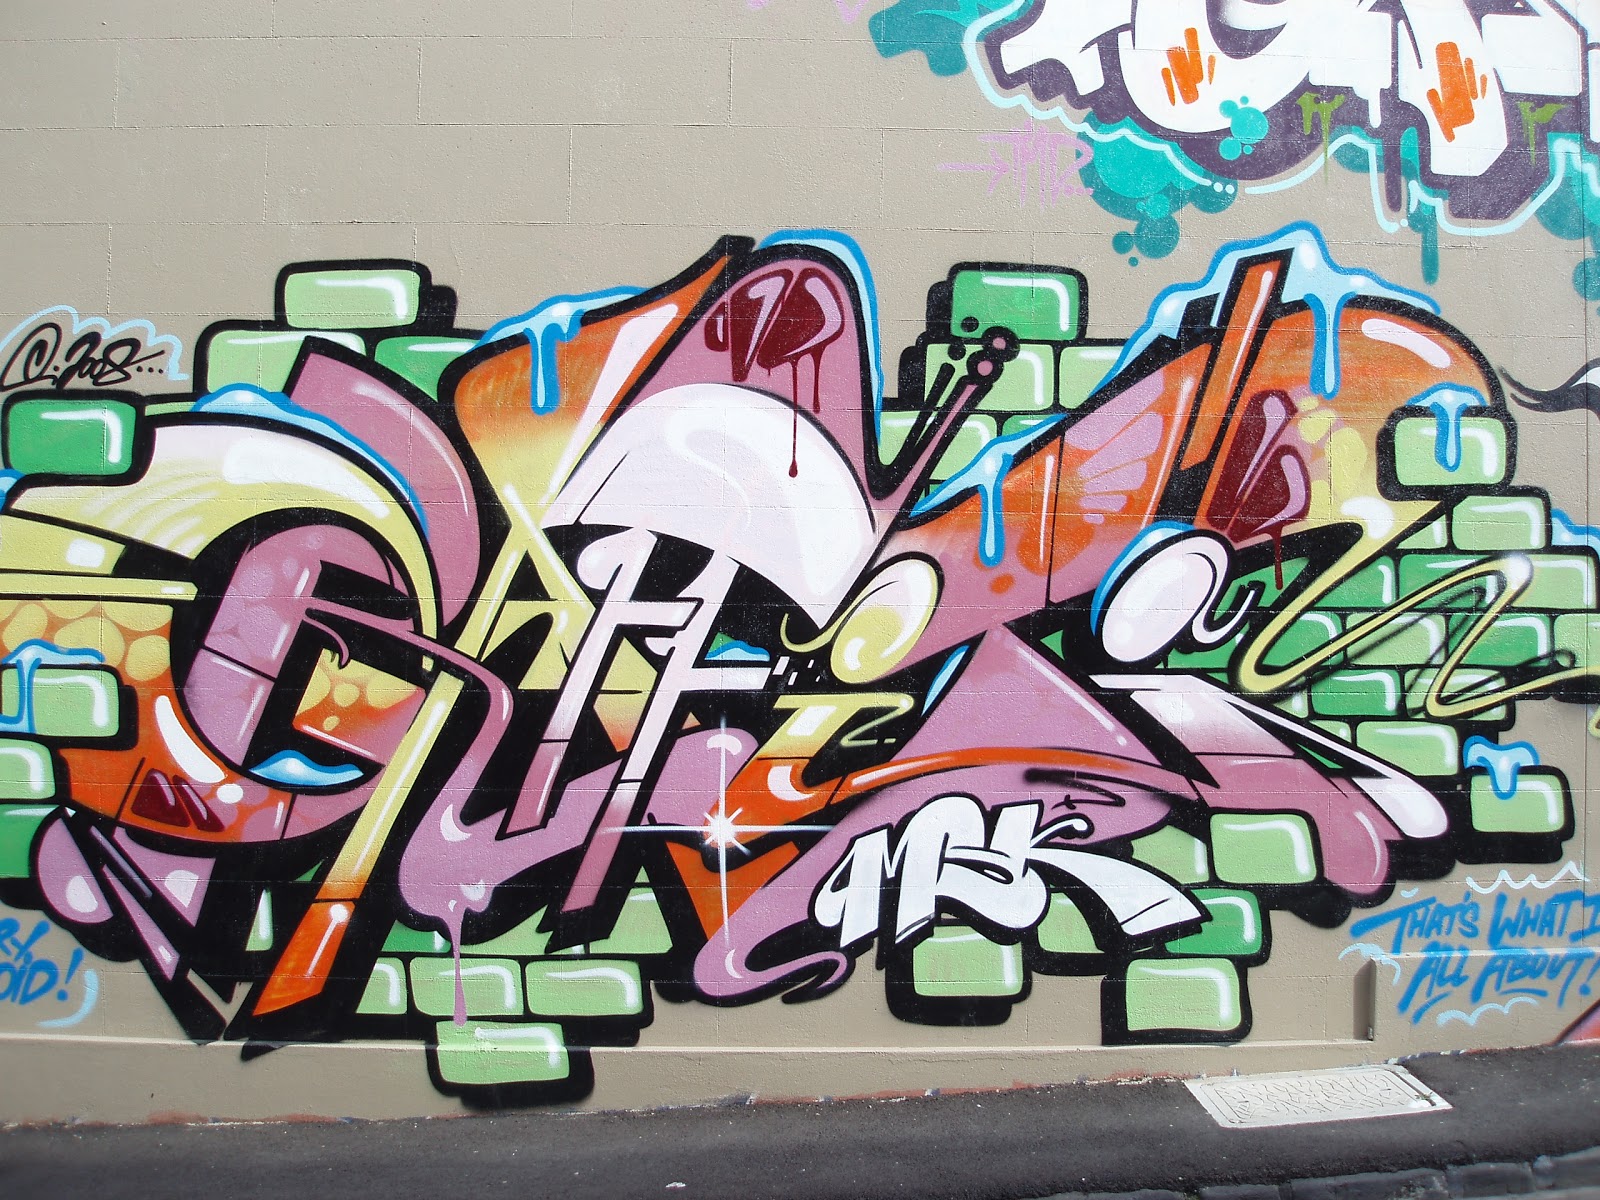  /AAAAAAAABgw/MA4QdFsCglU/s1600/graffiti_wall_street_art_design.JPG